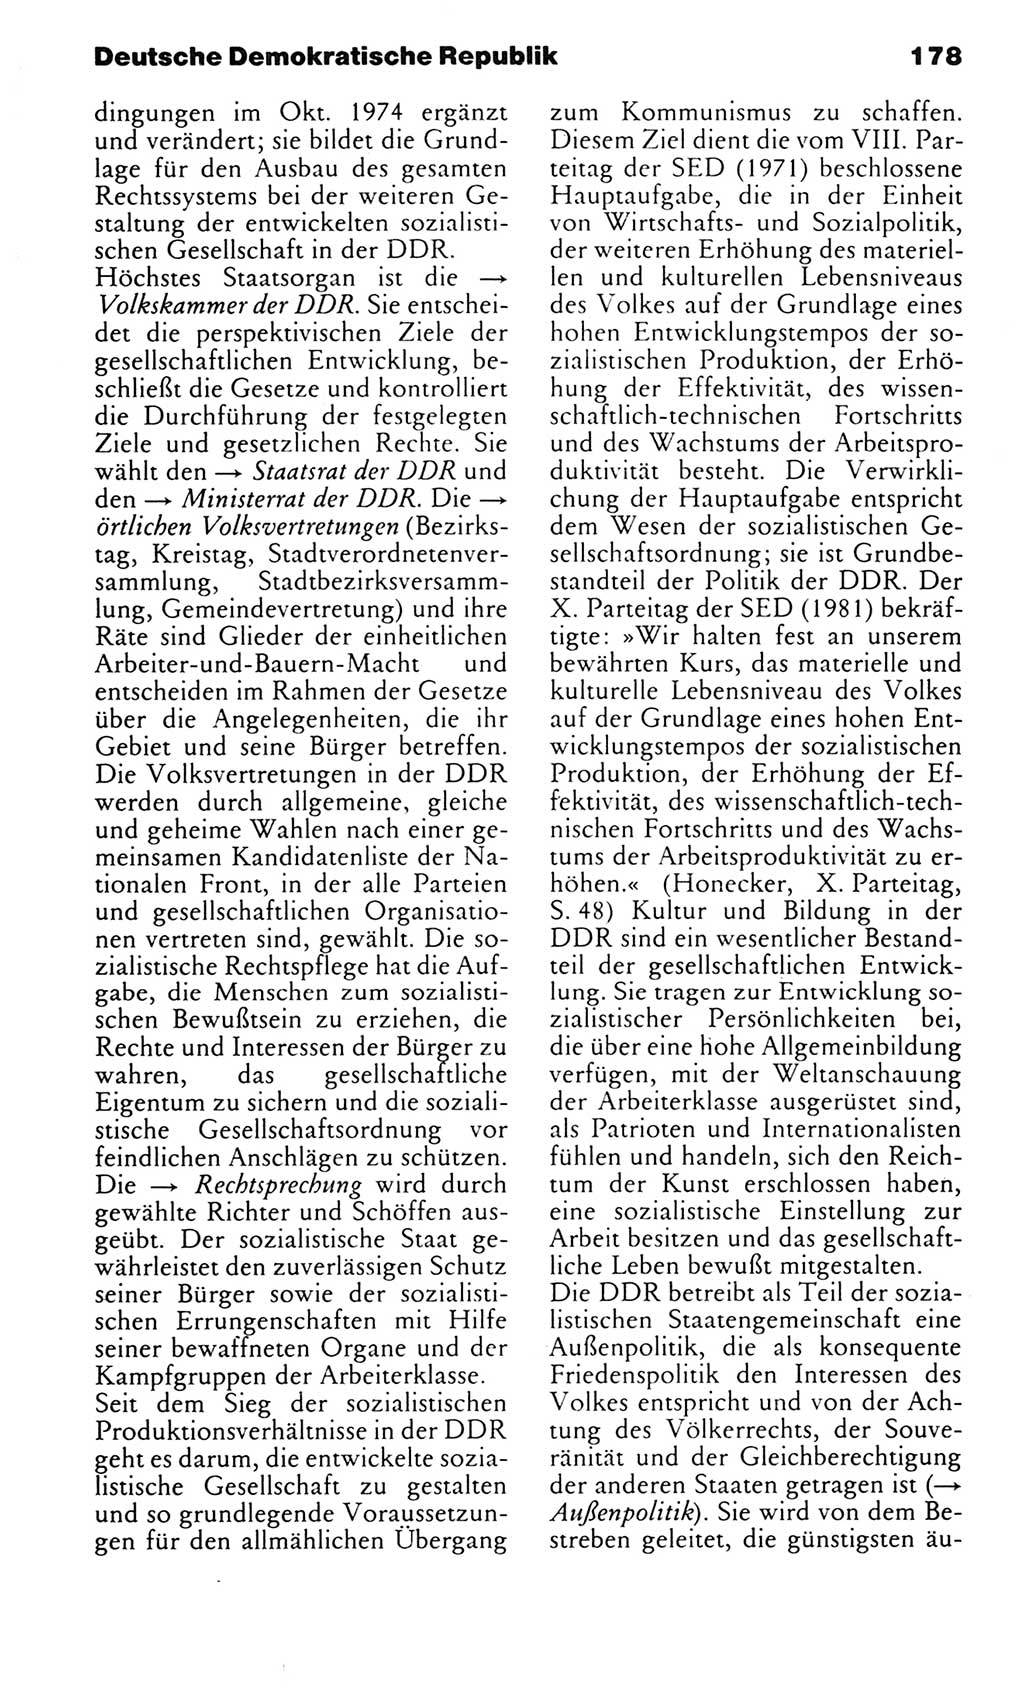 Kleines politisches Wörterbuch [Deutsche Demokratische Republik (DDR)] 1983, Seite 178 (Kl. pol. Wb. DDR 1983, S. 178)